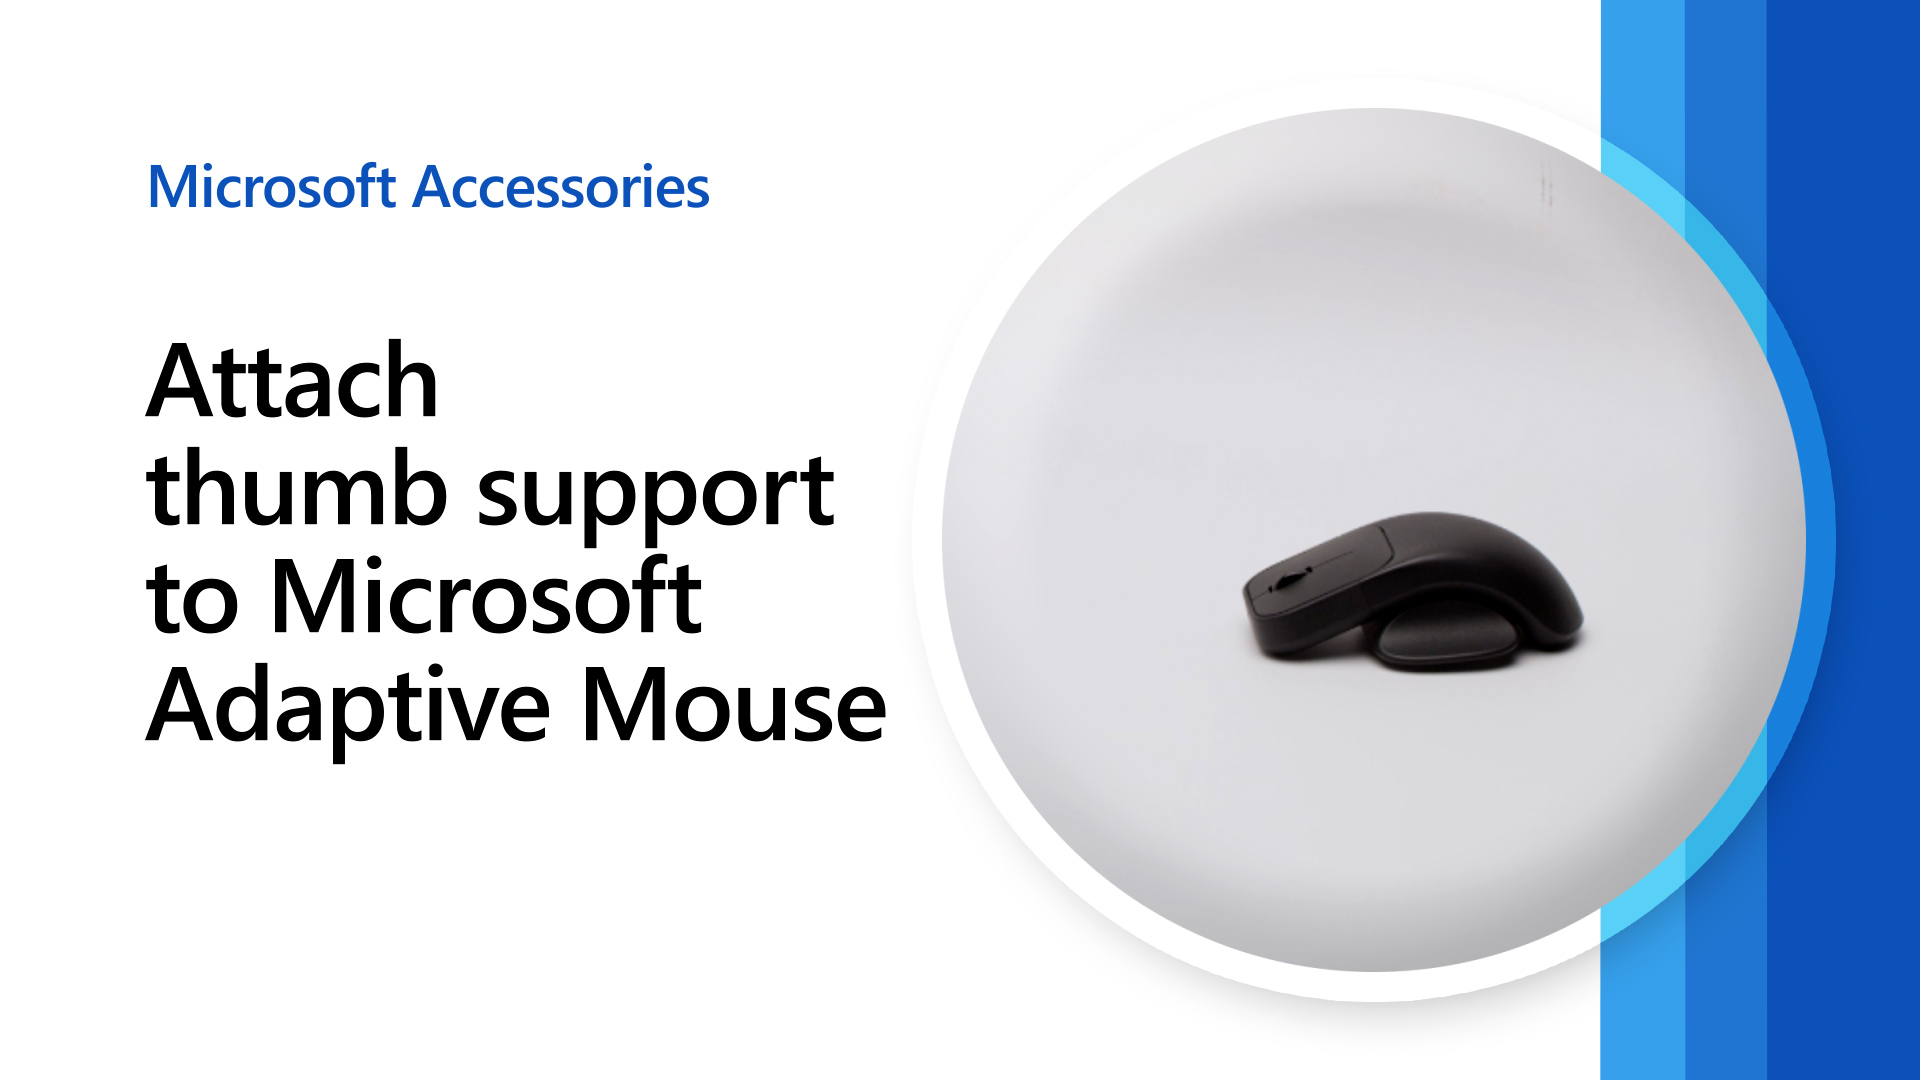 Utiliser la souris avec la voix - Support Microsoft